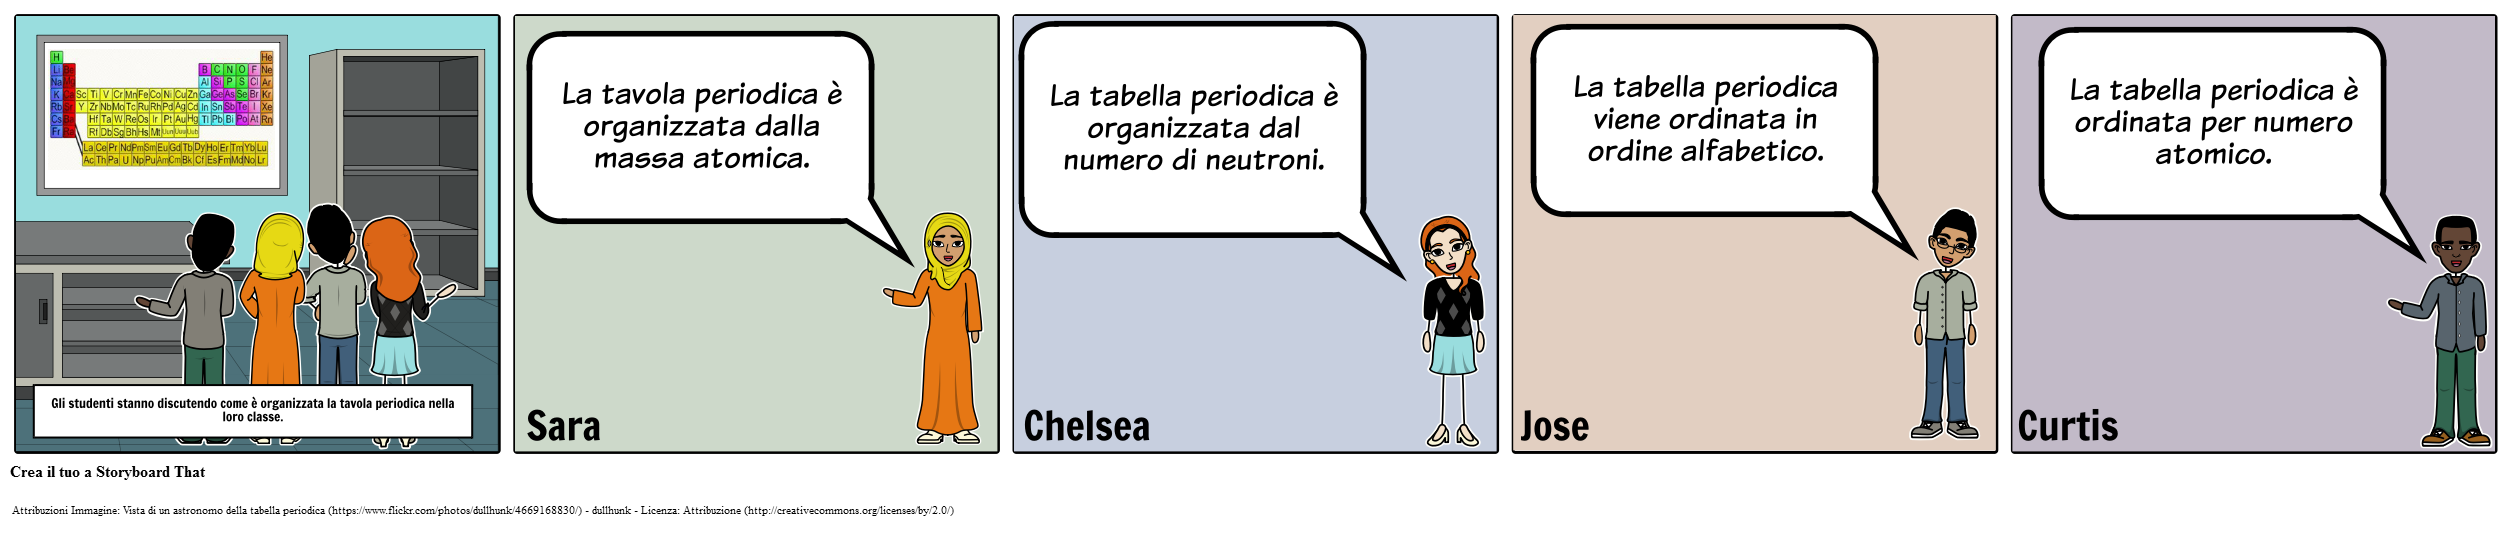 Storyboard di Discussione - MS - La Tabella Periodica